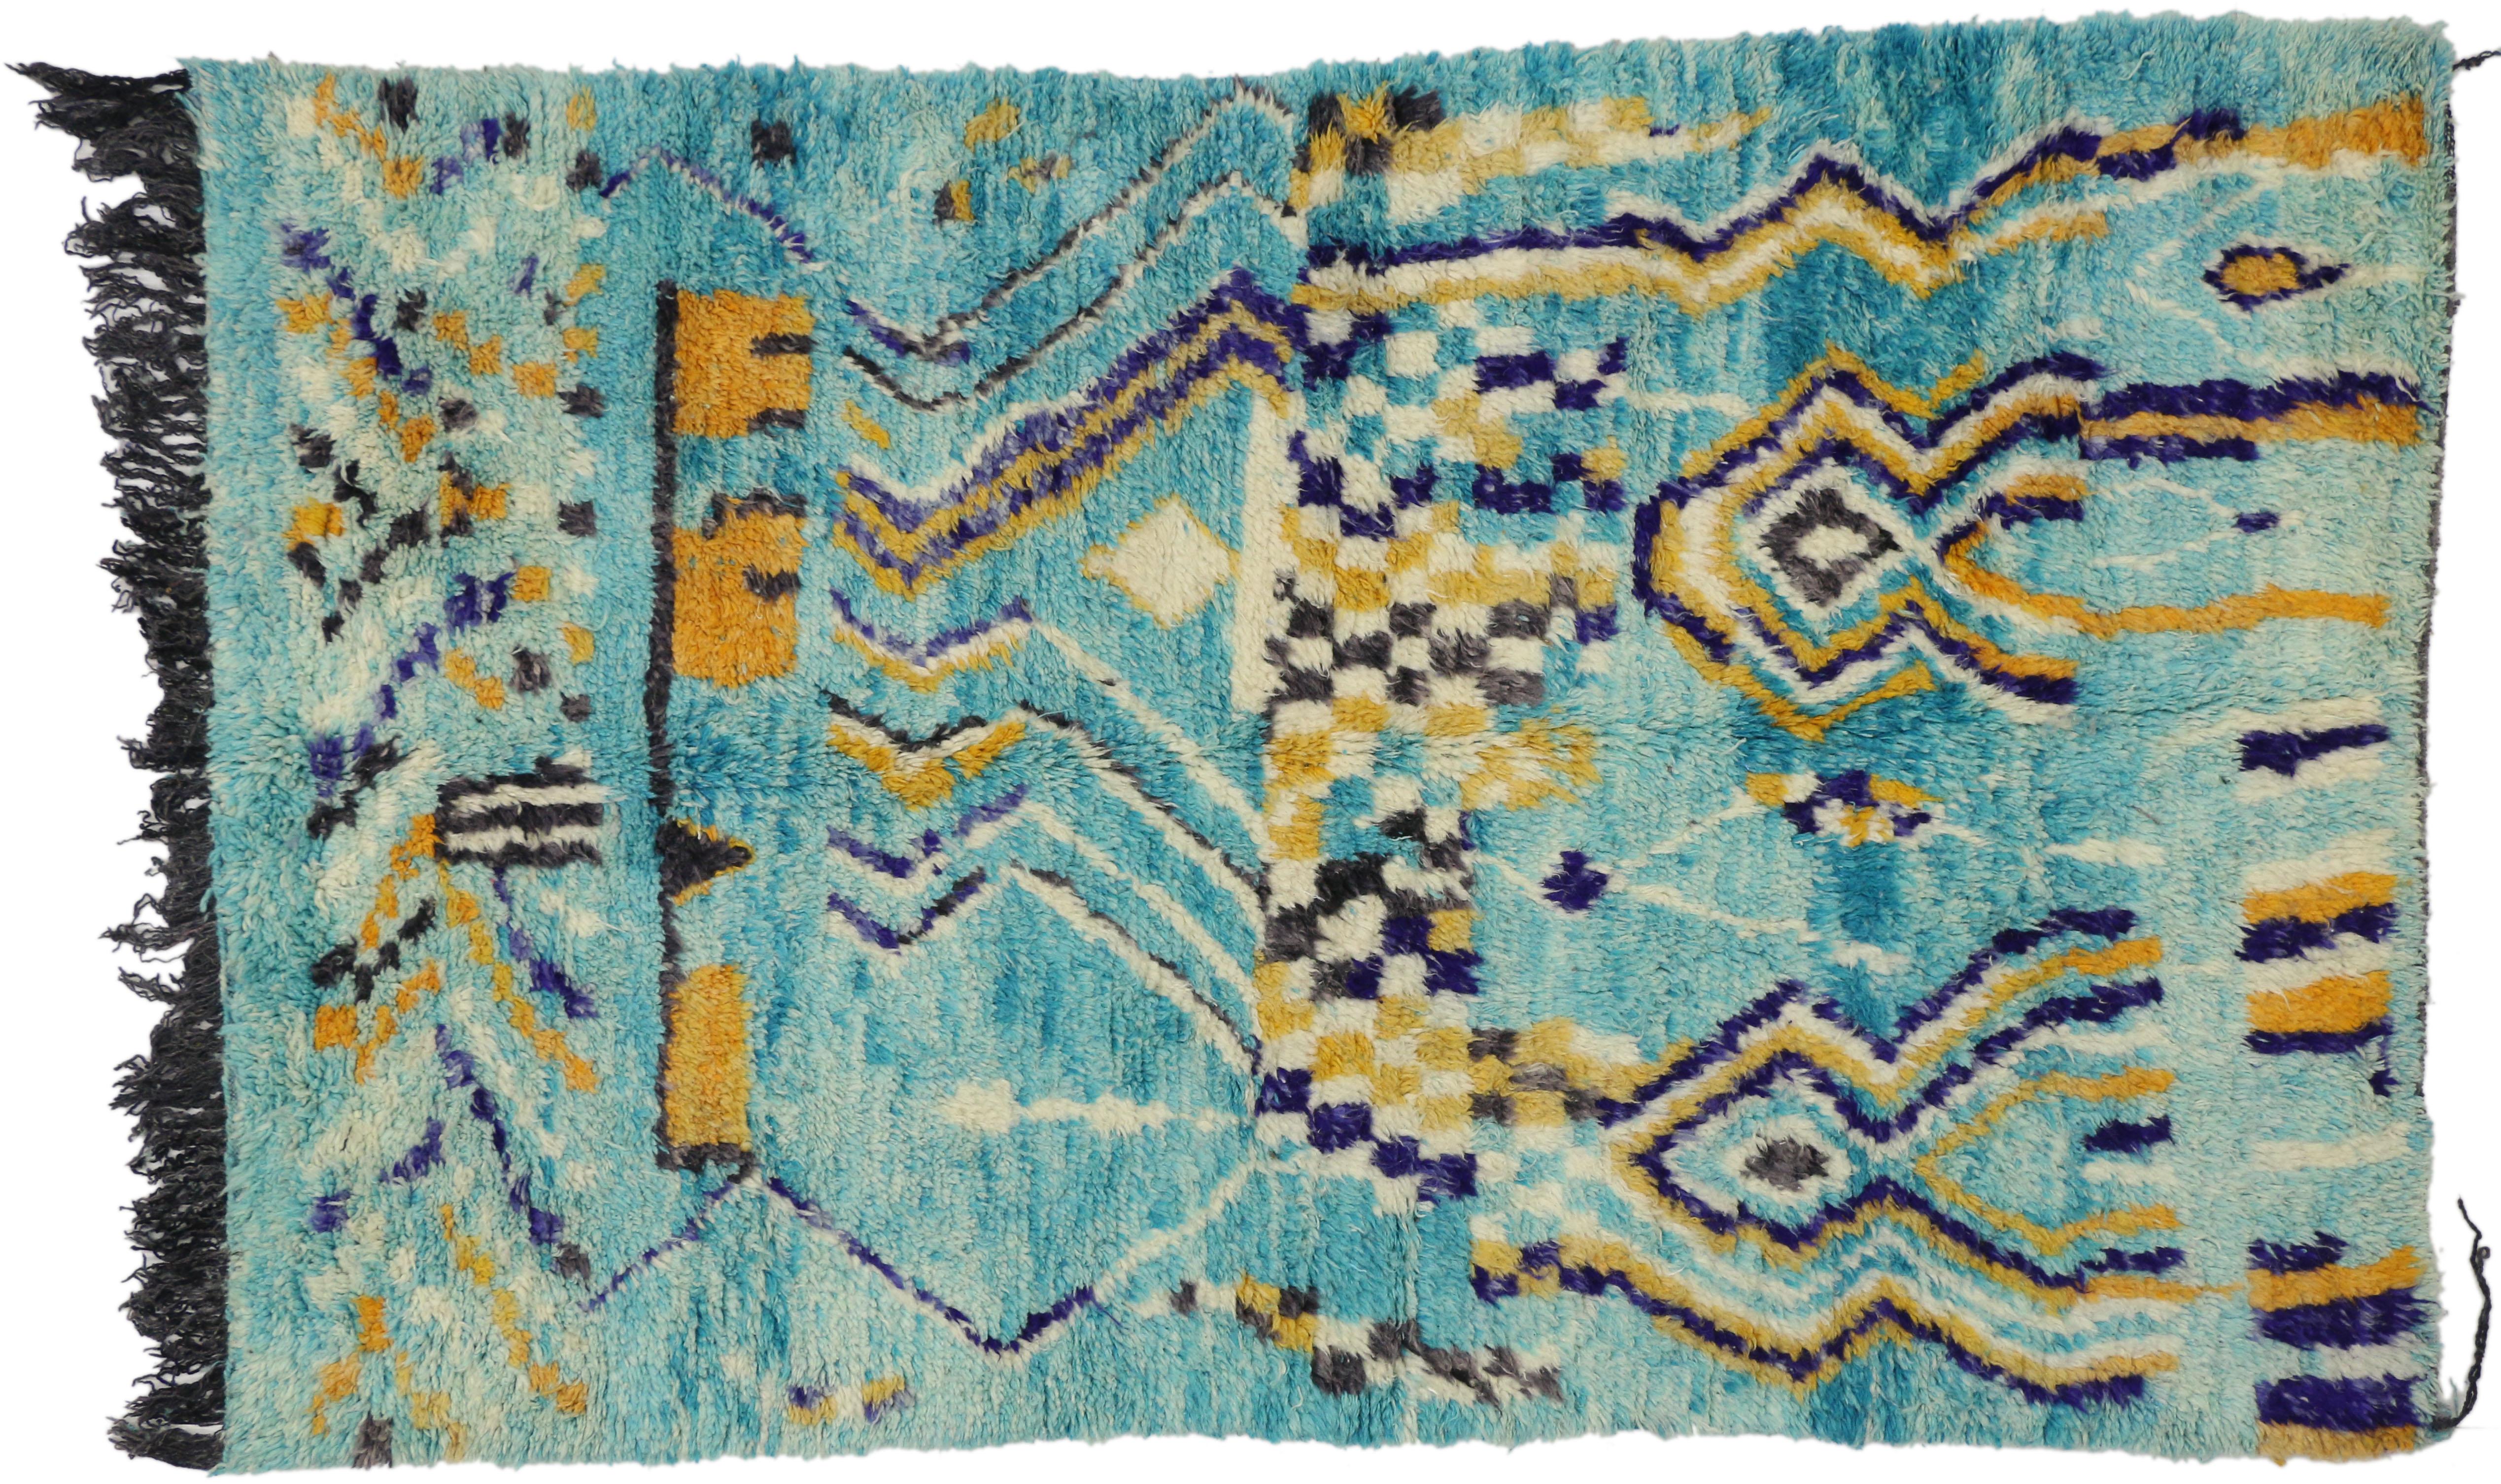 20711 Tapis marocain Vintage Aqua Boujad, 05'00 x 08'00. Originaires de la région du Boujad au Maroc, les tapis Boujad sont d'exquis chefs-d'œuvre tissés à la main qui incarnent le vibrant héritage artistique des tribus berbères, en particulier les